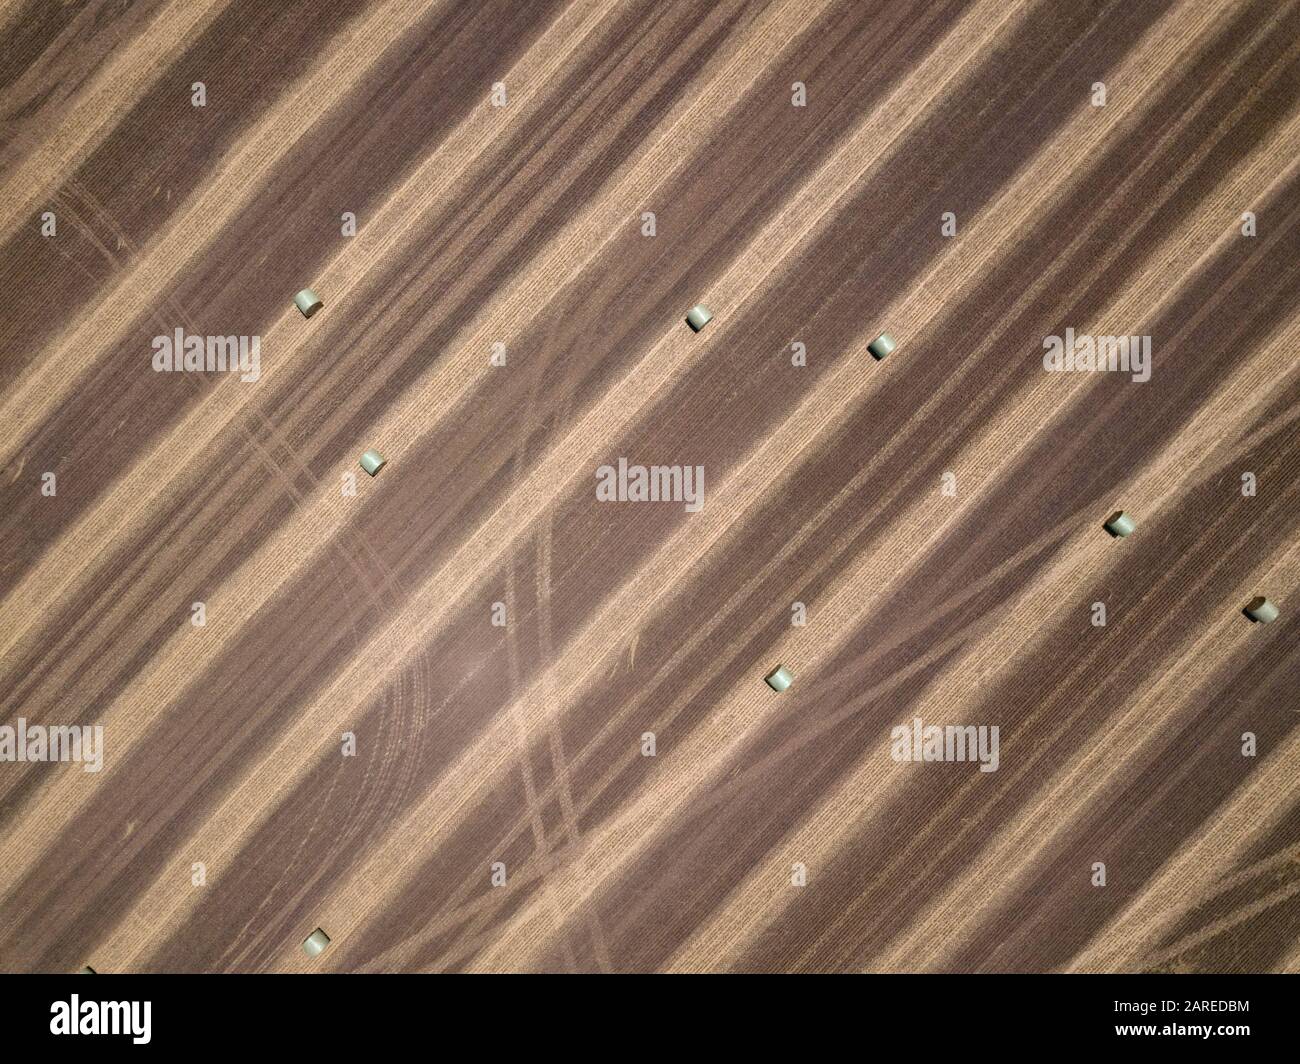 Agricoltura paddock astratto con balle di fieno rotonde, piste e modelli di fondo, vista aerea, Victoria, Australia Foto Stock